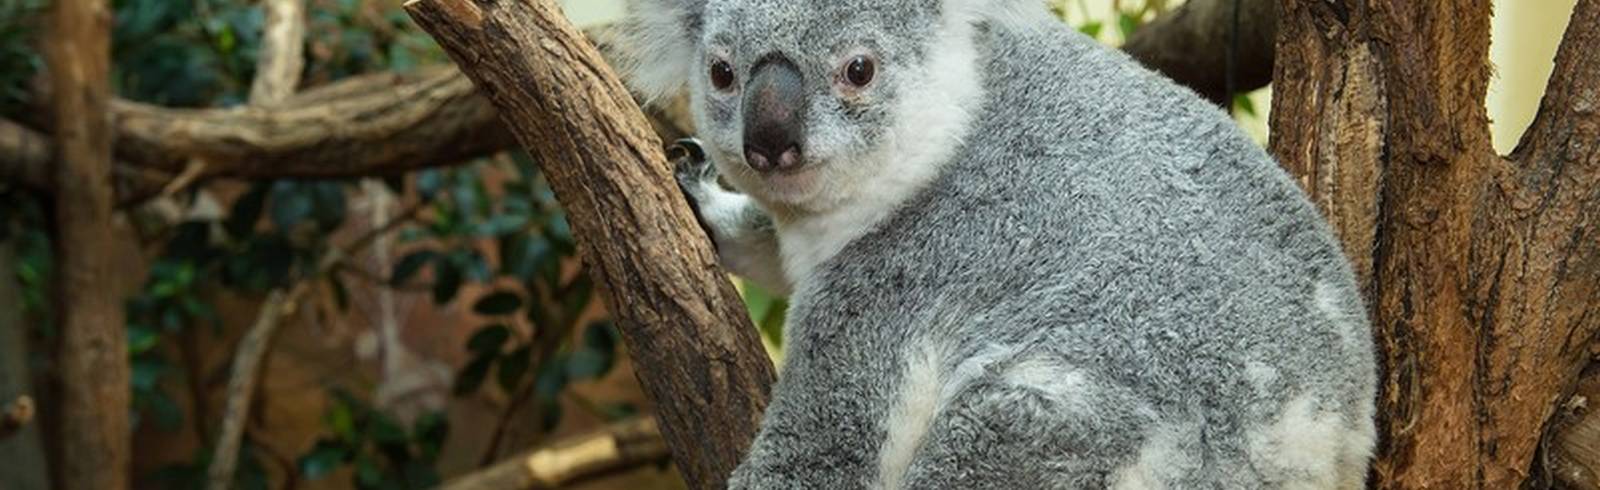 Koala-Weibchen im Zoo Schönbrunn verstorben